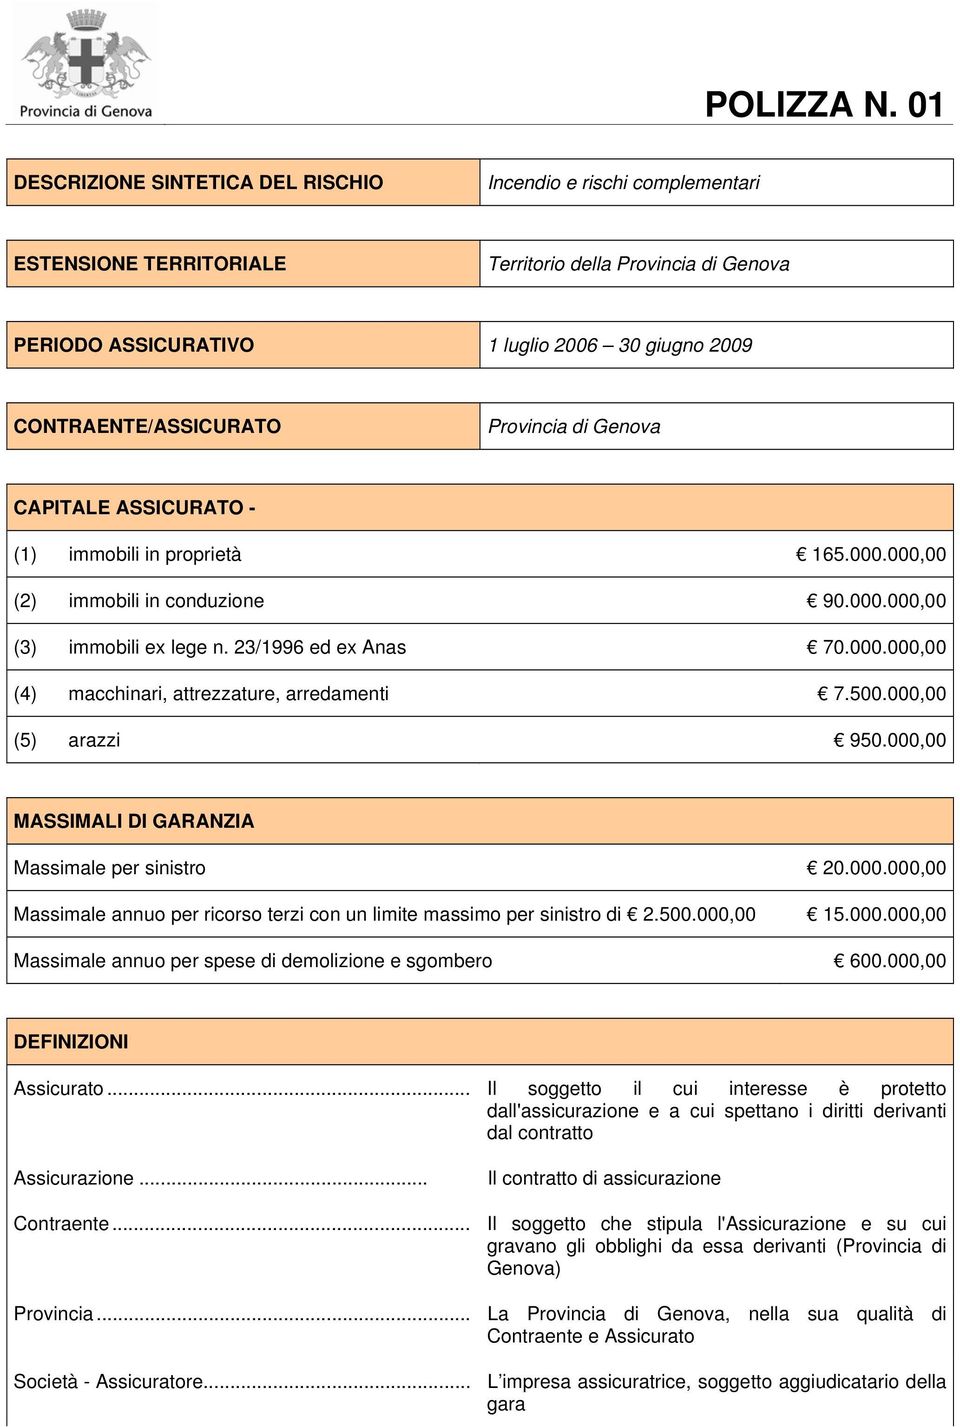 CONTRAENTE/ASSICURATO Provincia di Genova CAPITALE ASSICURATO - (1) immobili in proprietà 165.000.000,00 (2) immobili in conduzione 90.000.000,00 (3) immobili ex lege n. 23/1996 ed ex Anas 70.000.000,00 (4) macchinari, attrezzature, arredamenti 7.